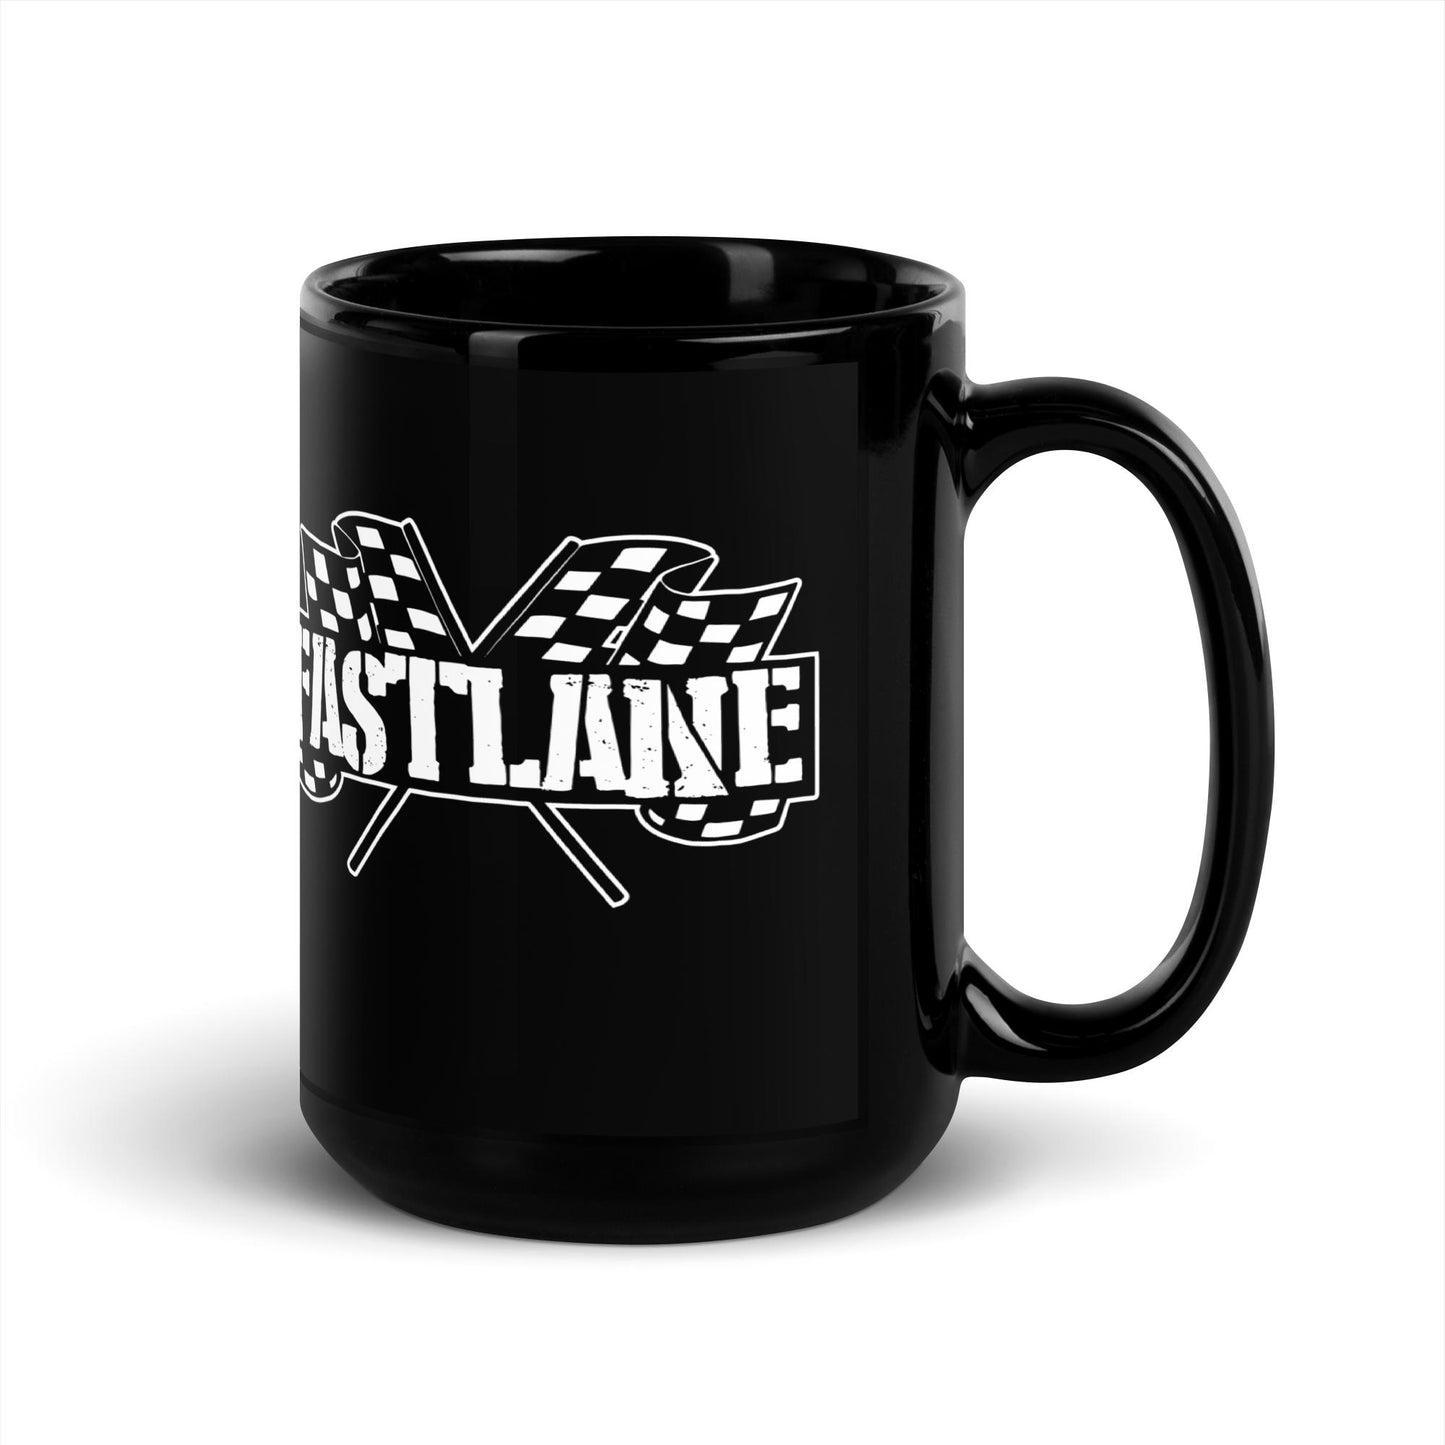 Fastlane Mugs